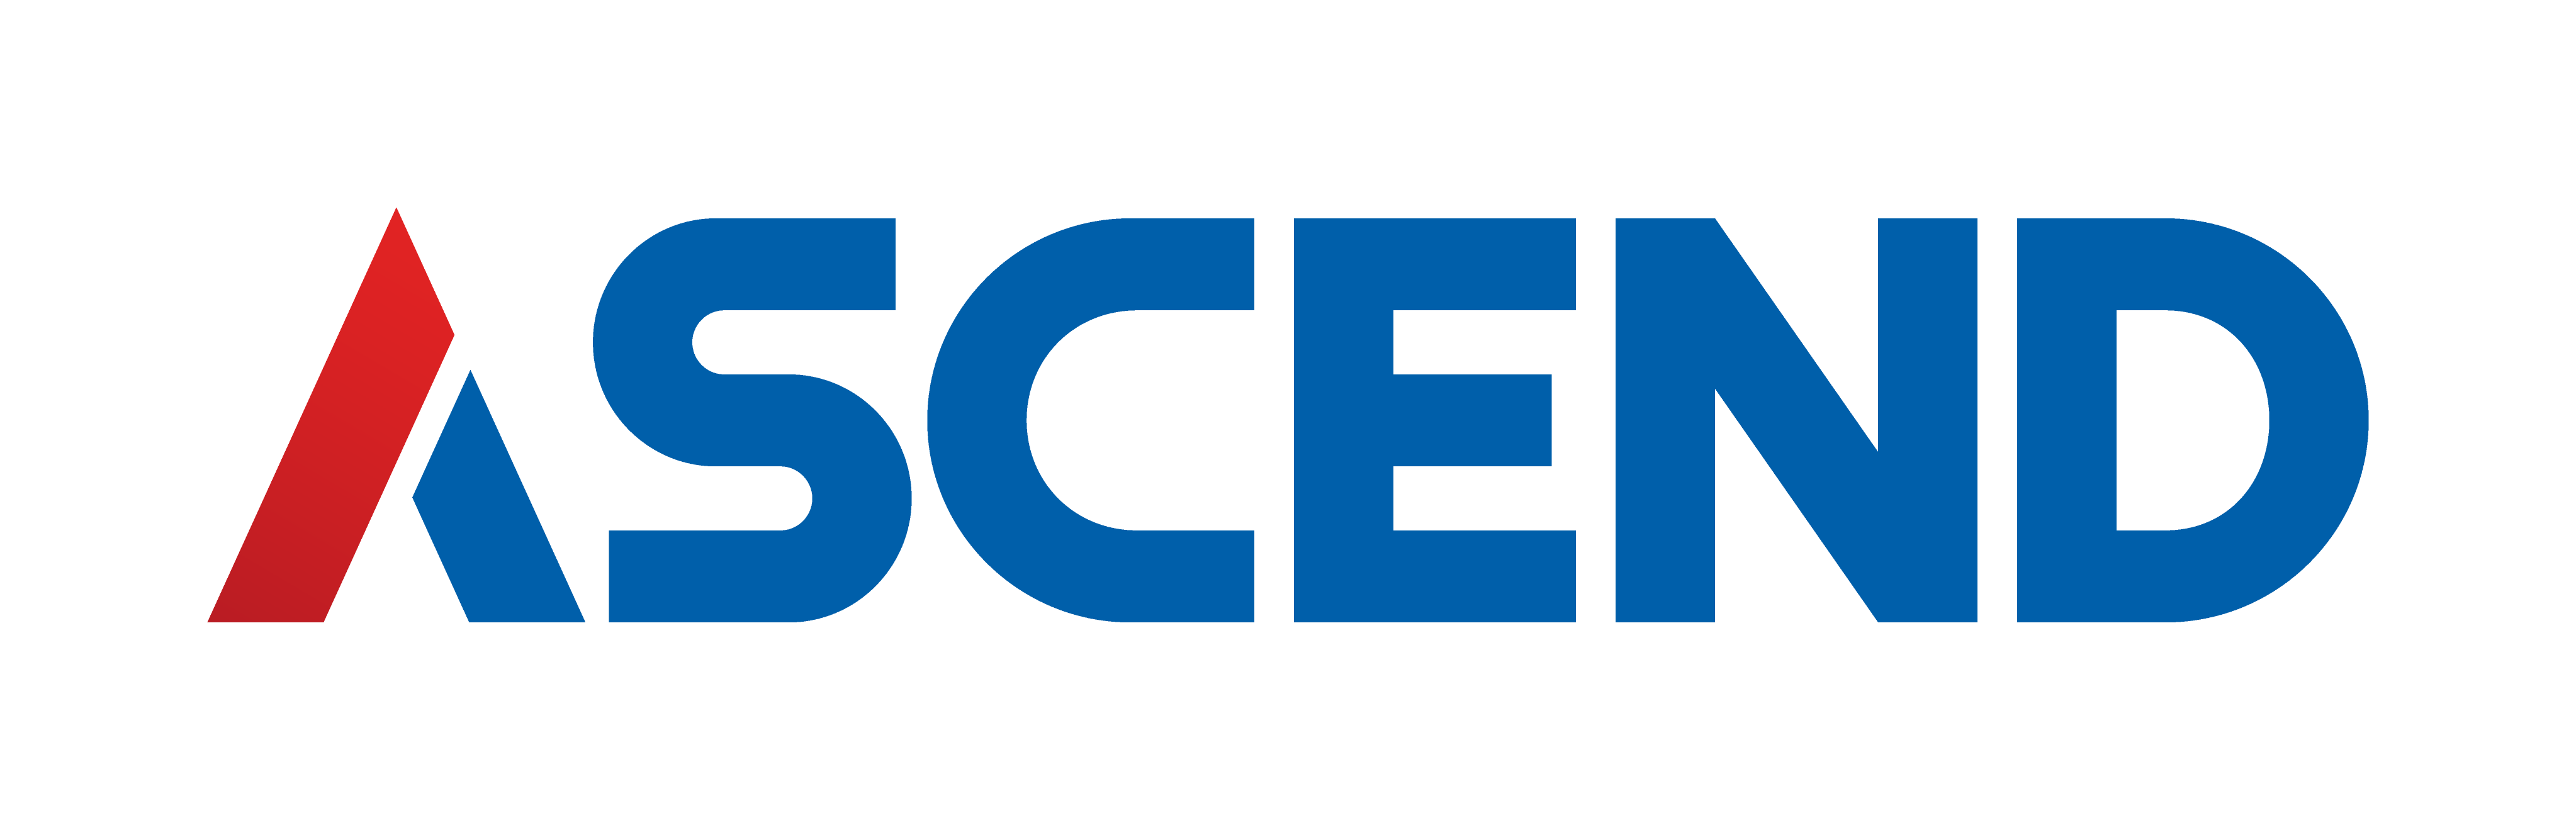 アセンド株式会社logo